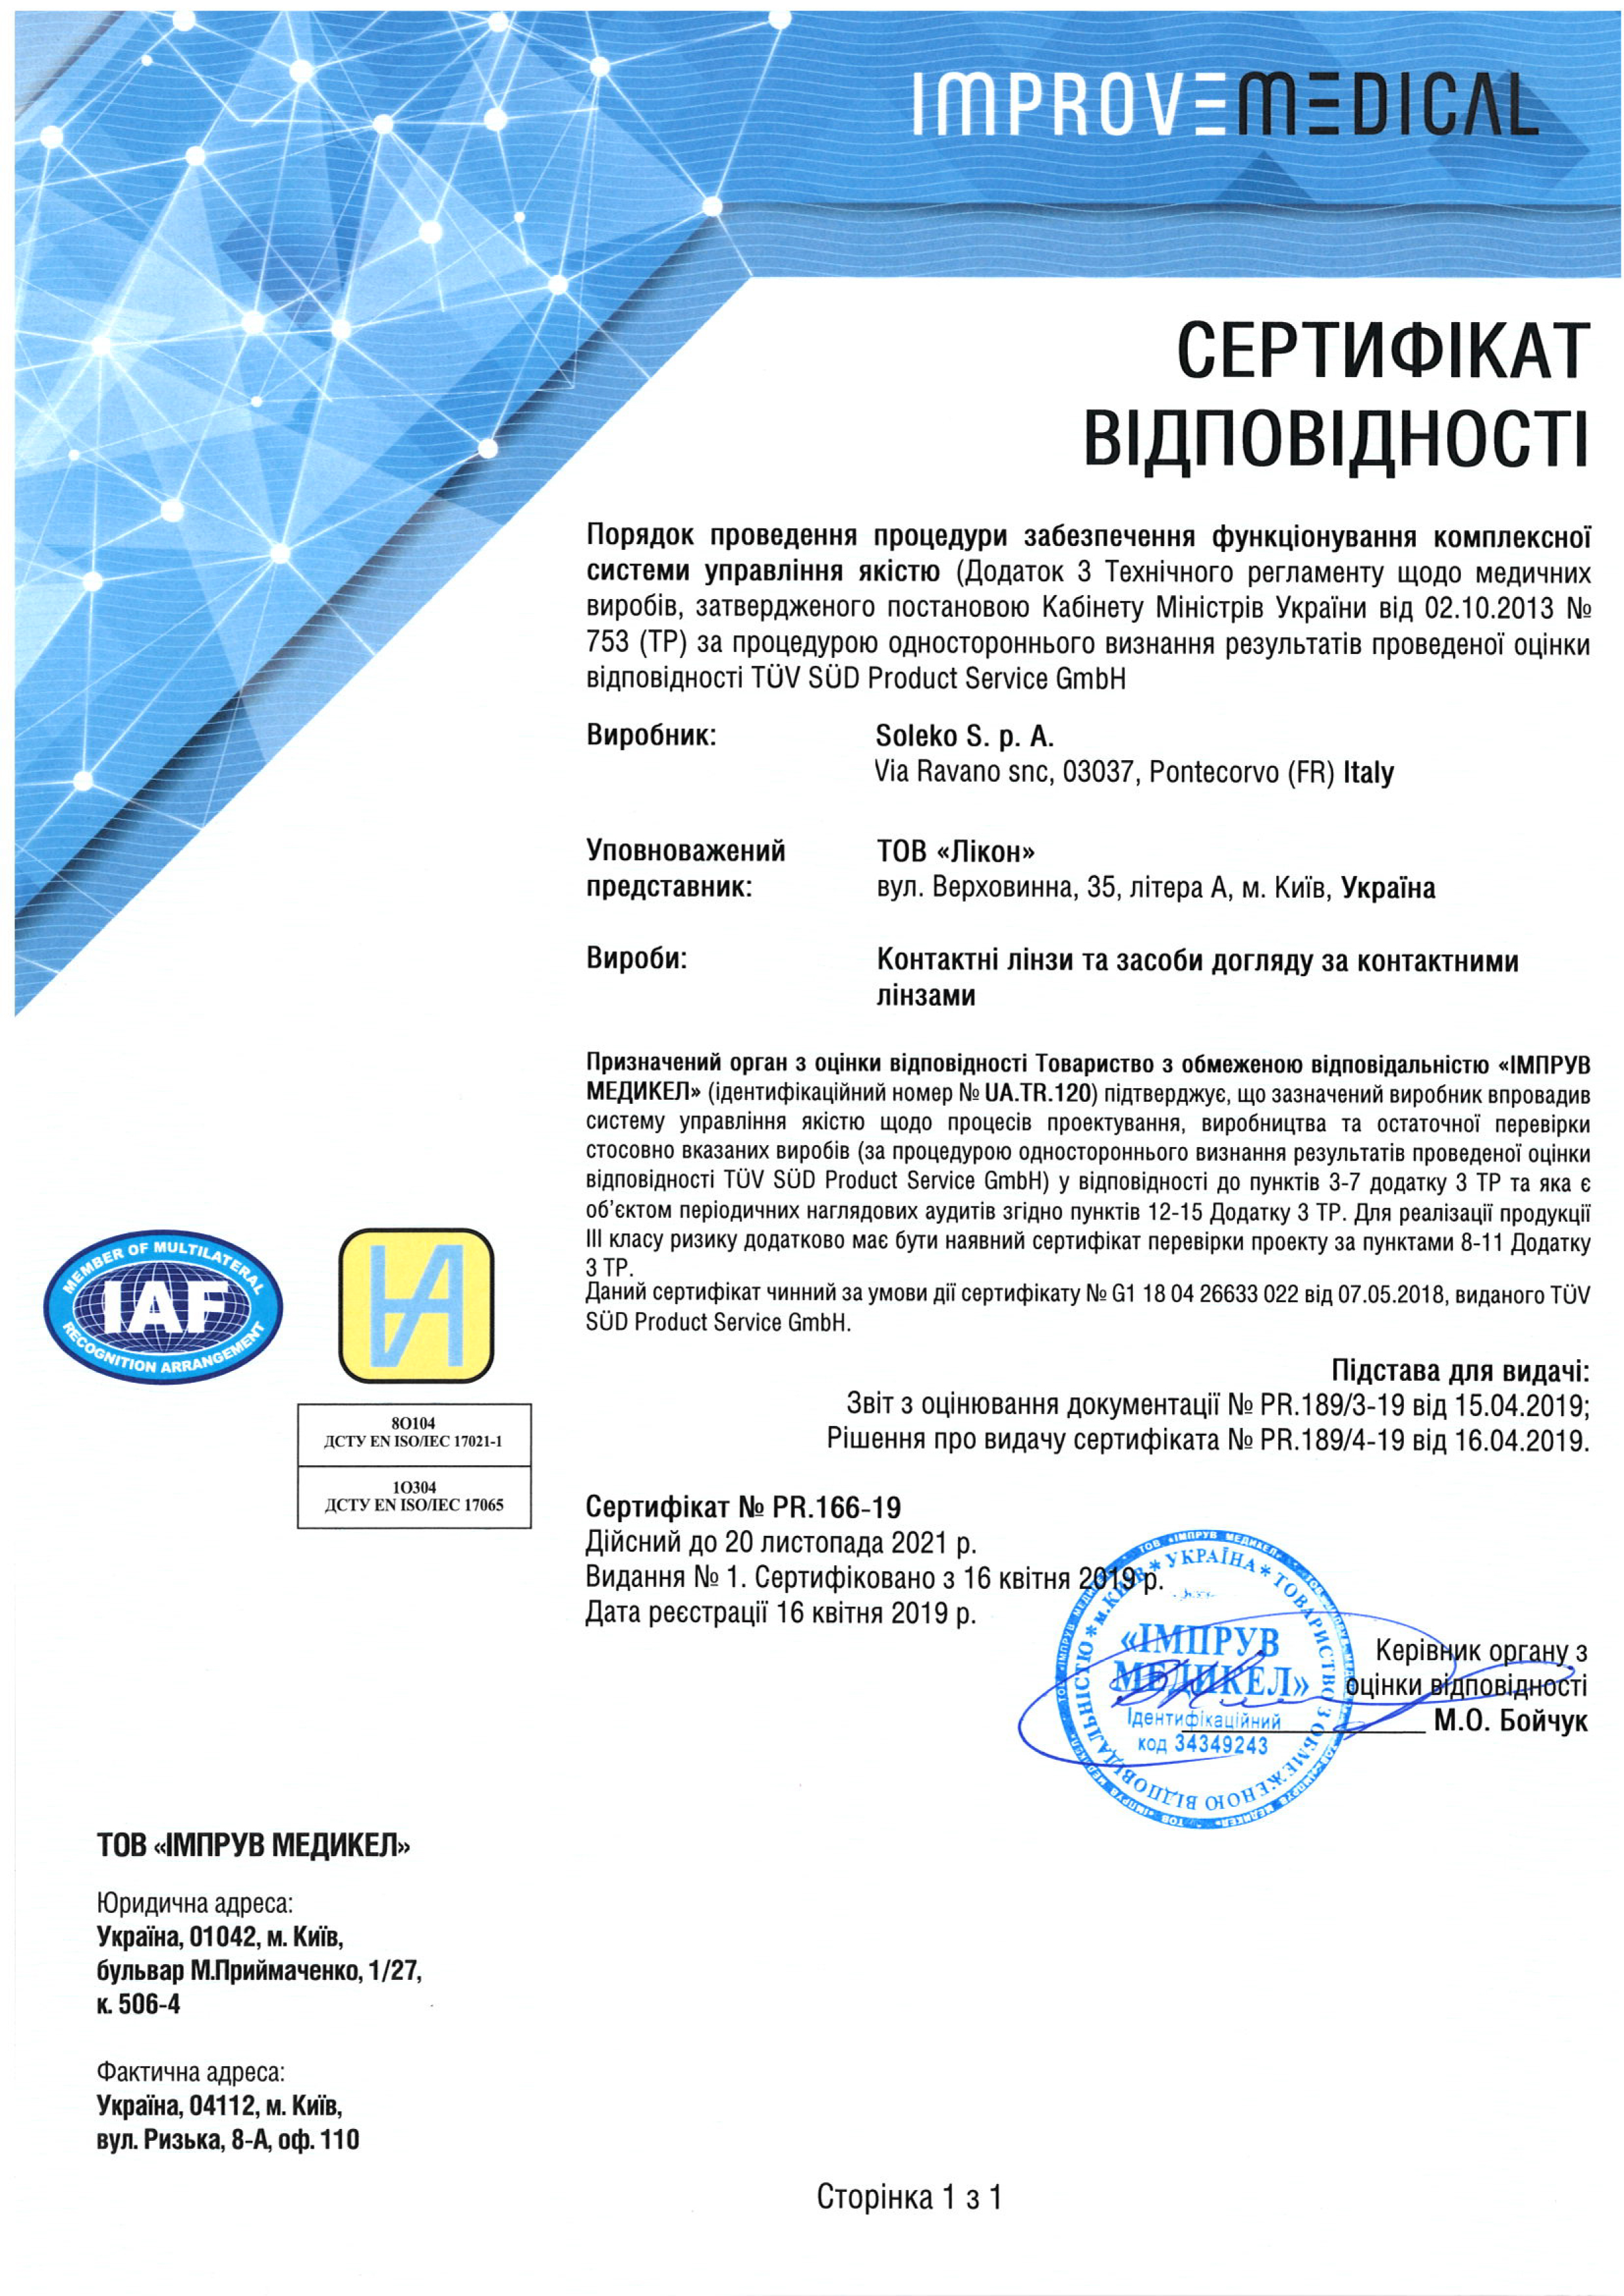 Сертифікат відповідності Soleko